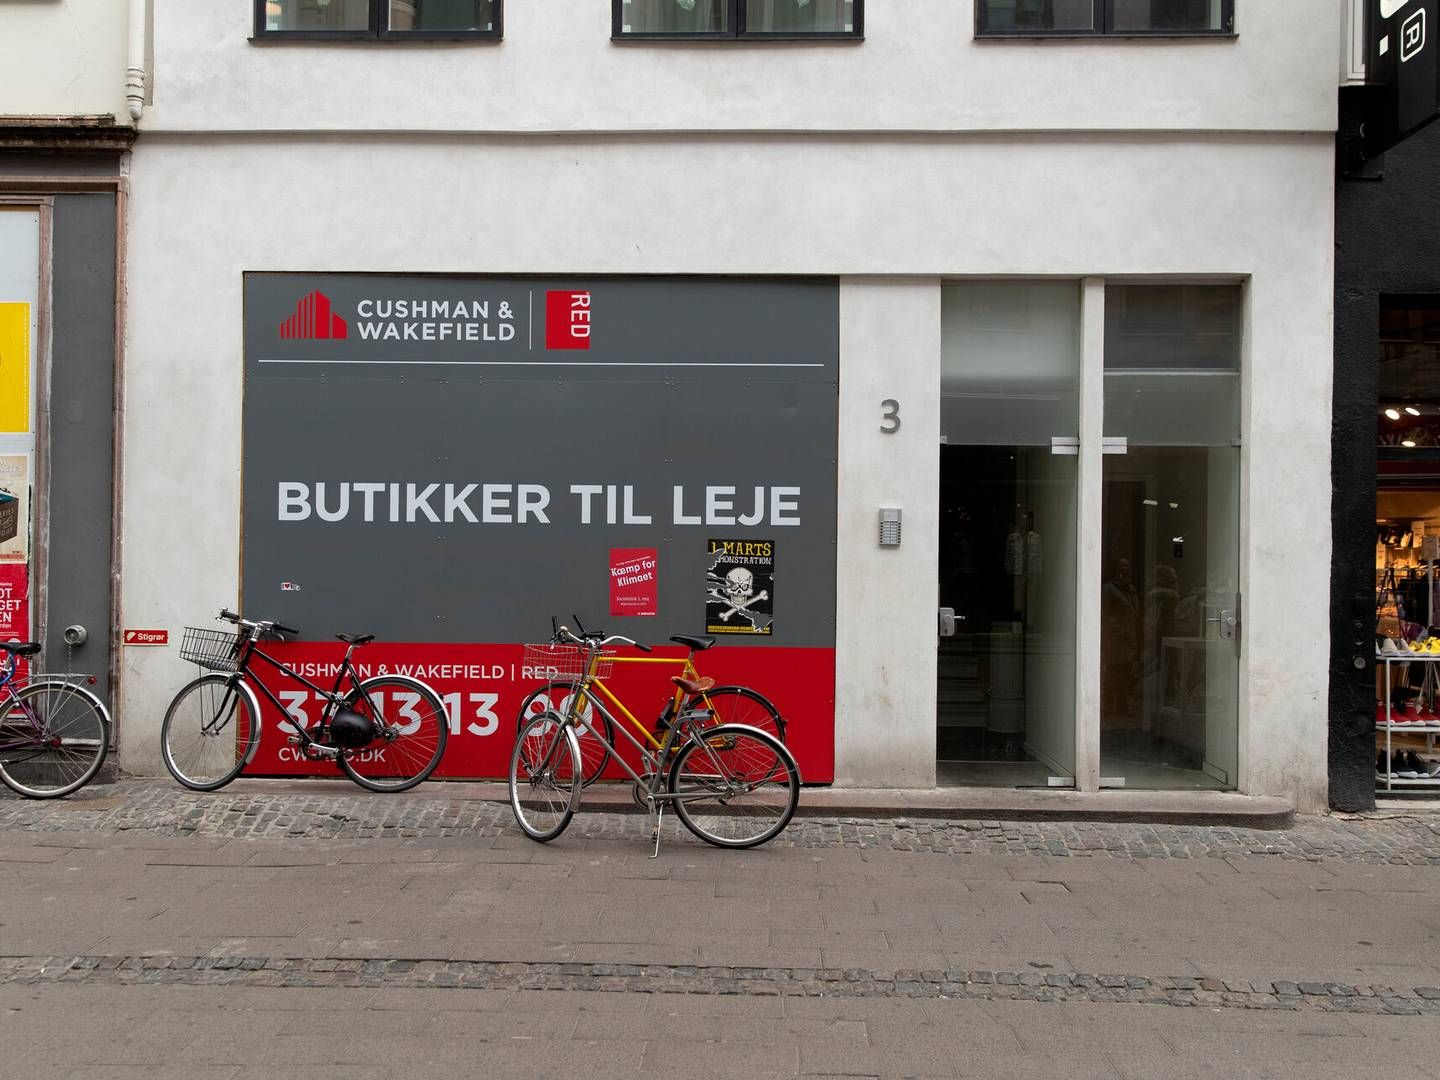 Lønstigning til butiksansatte kan føre til flere butikslukninger, mener brancheorganisationen Dansk Detail. | Foto: Peter Hove Olesen/ritzau Scanpix